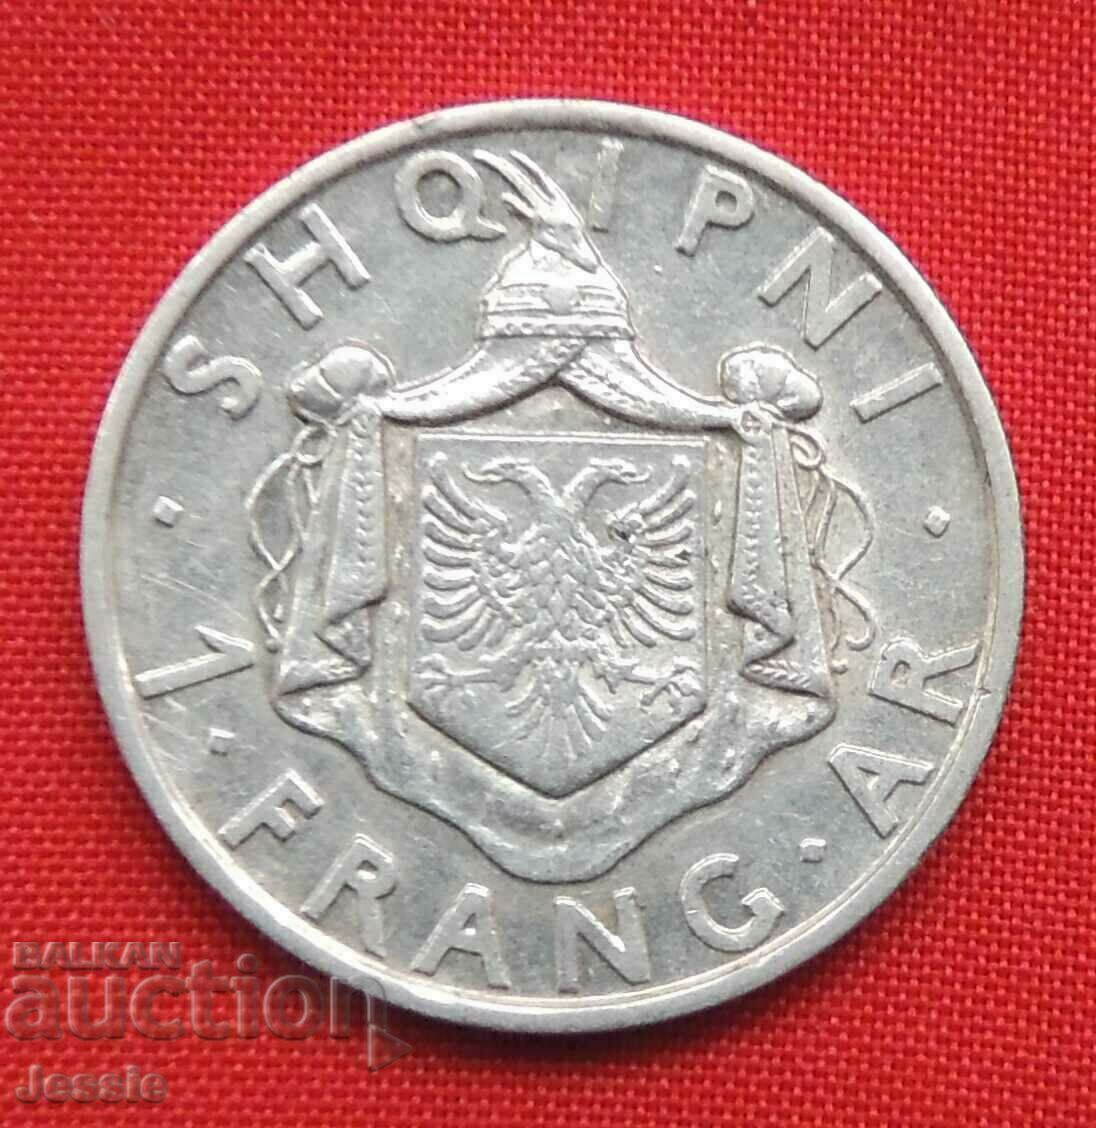 1 Franc 1935 R Albania silver QUALITY !